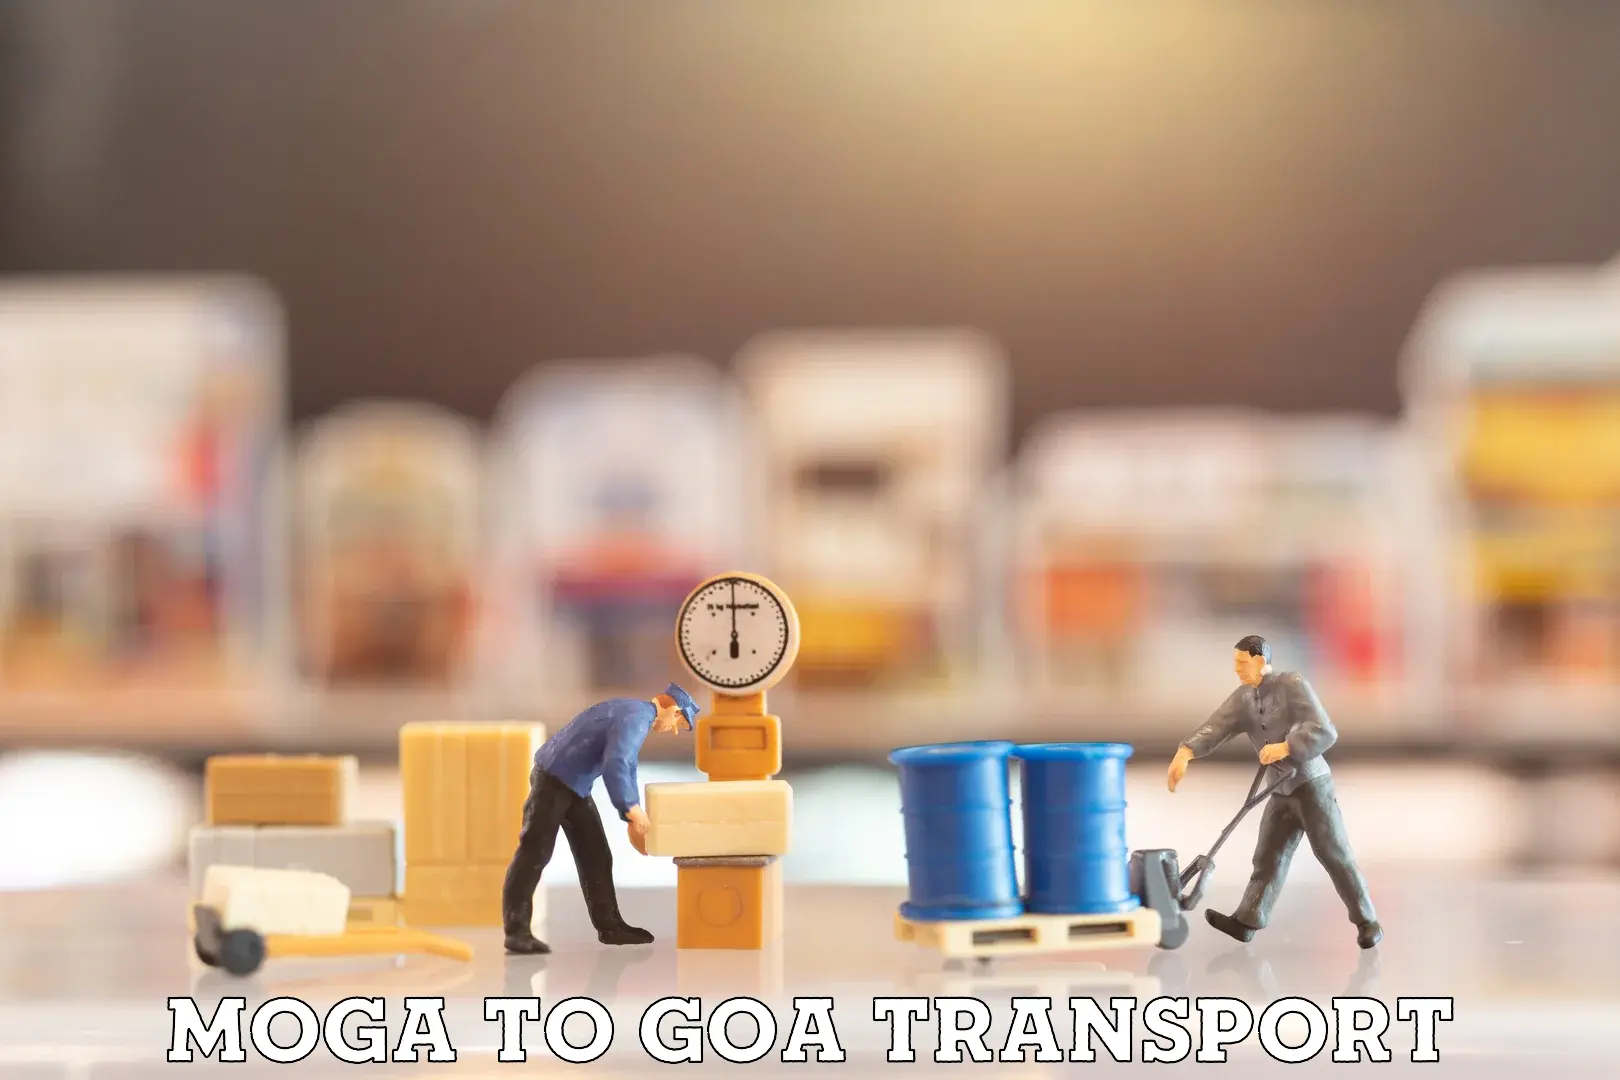 Nearest transport service Moga to Vasco da Gama